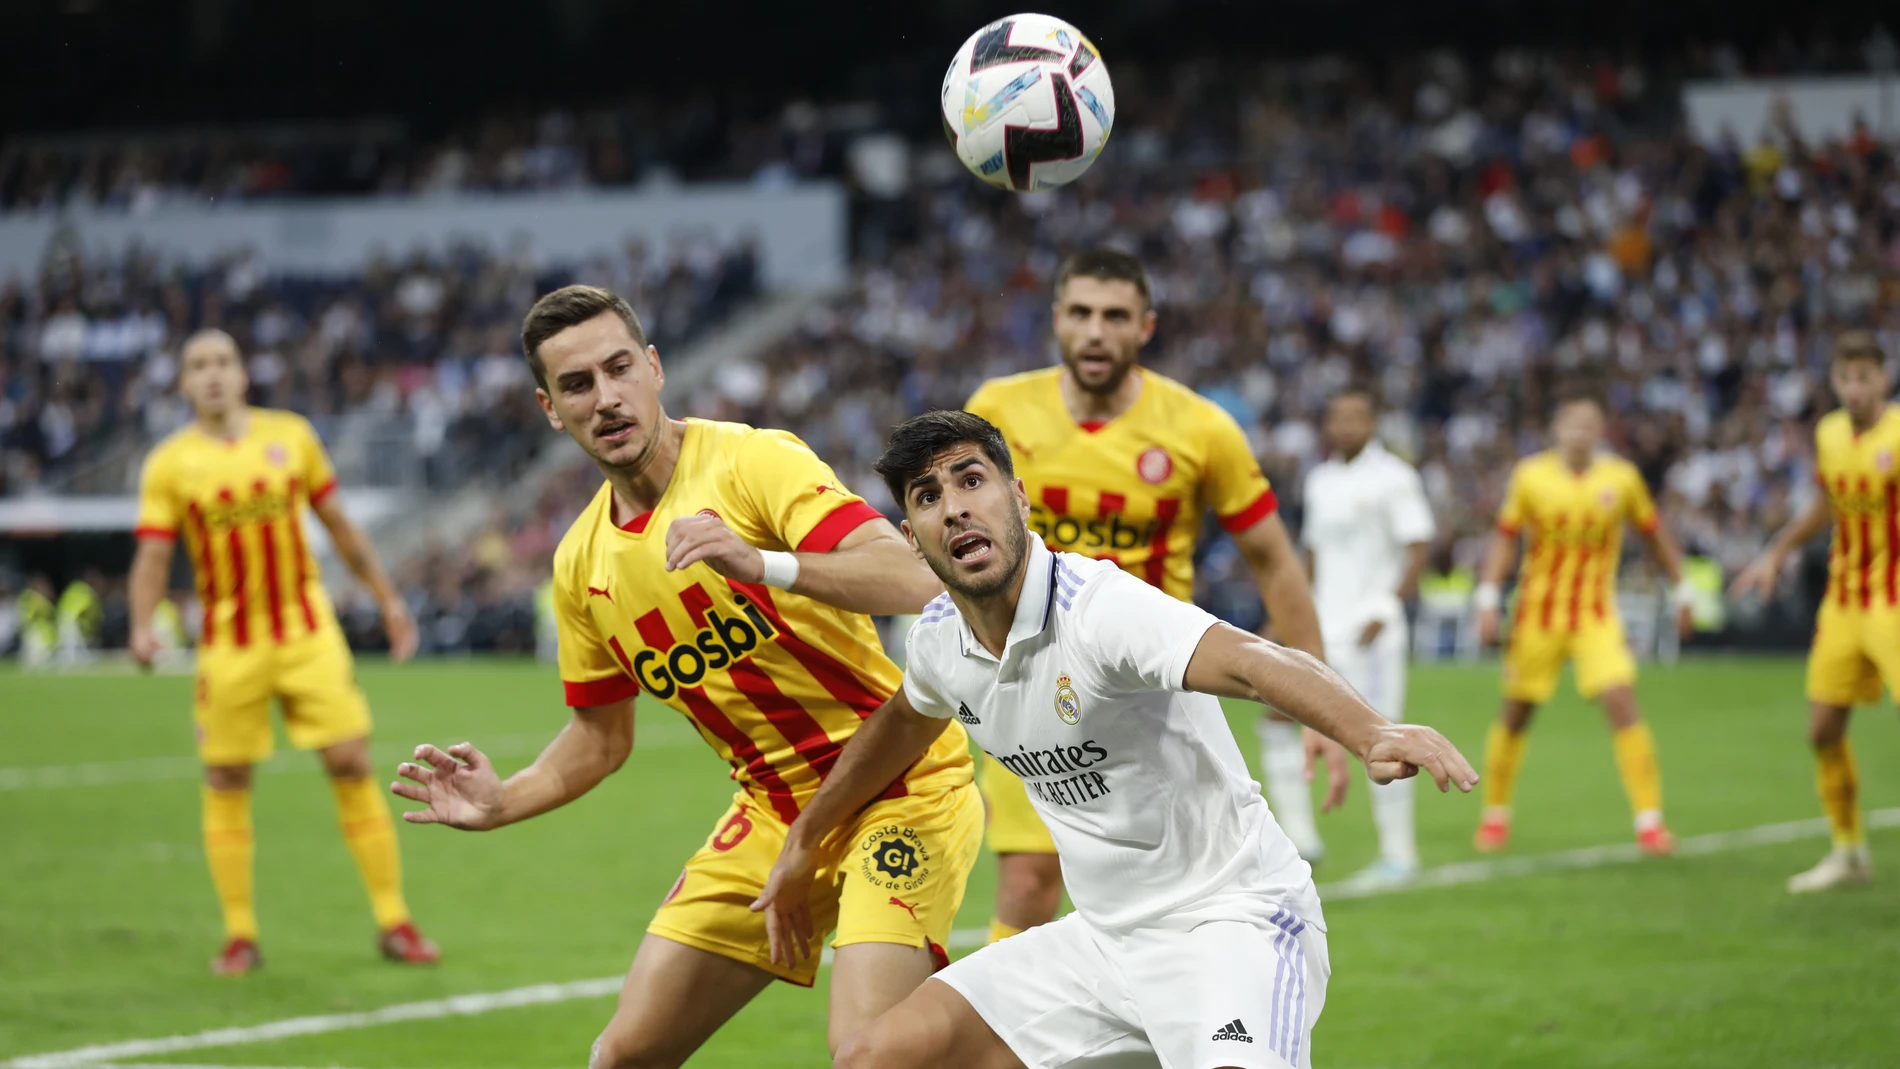 Asensio intenta controlar un balón durante el partido entre el Real Madrid y el Girona